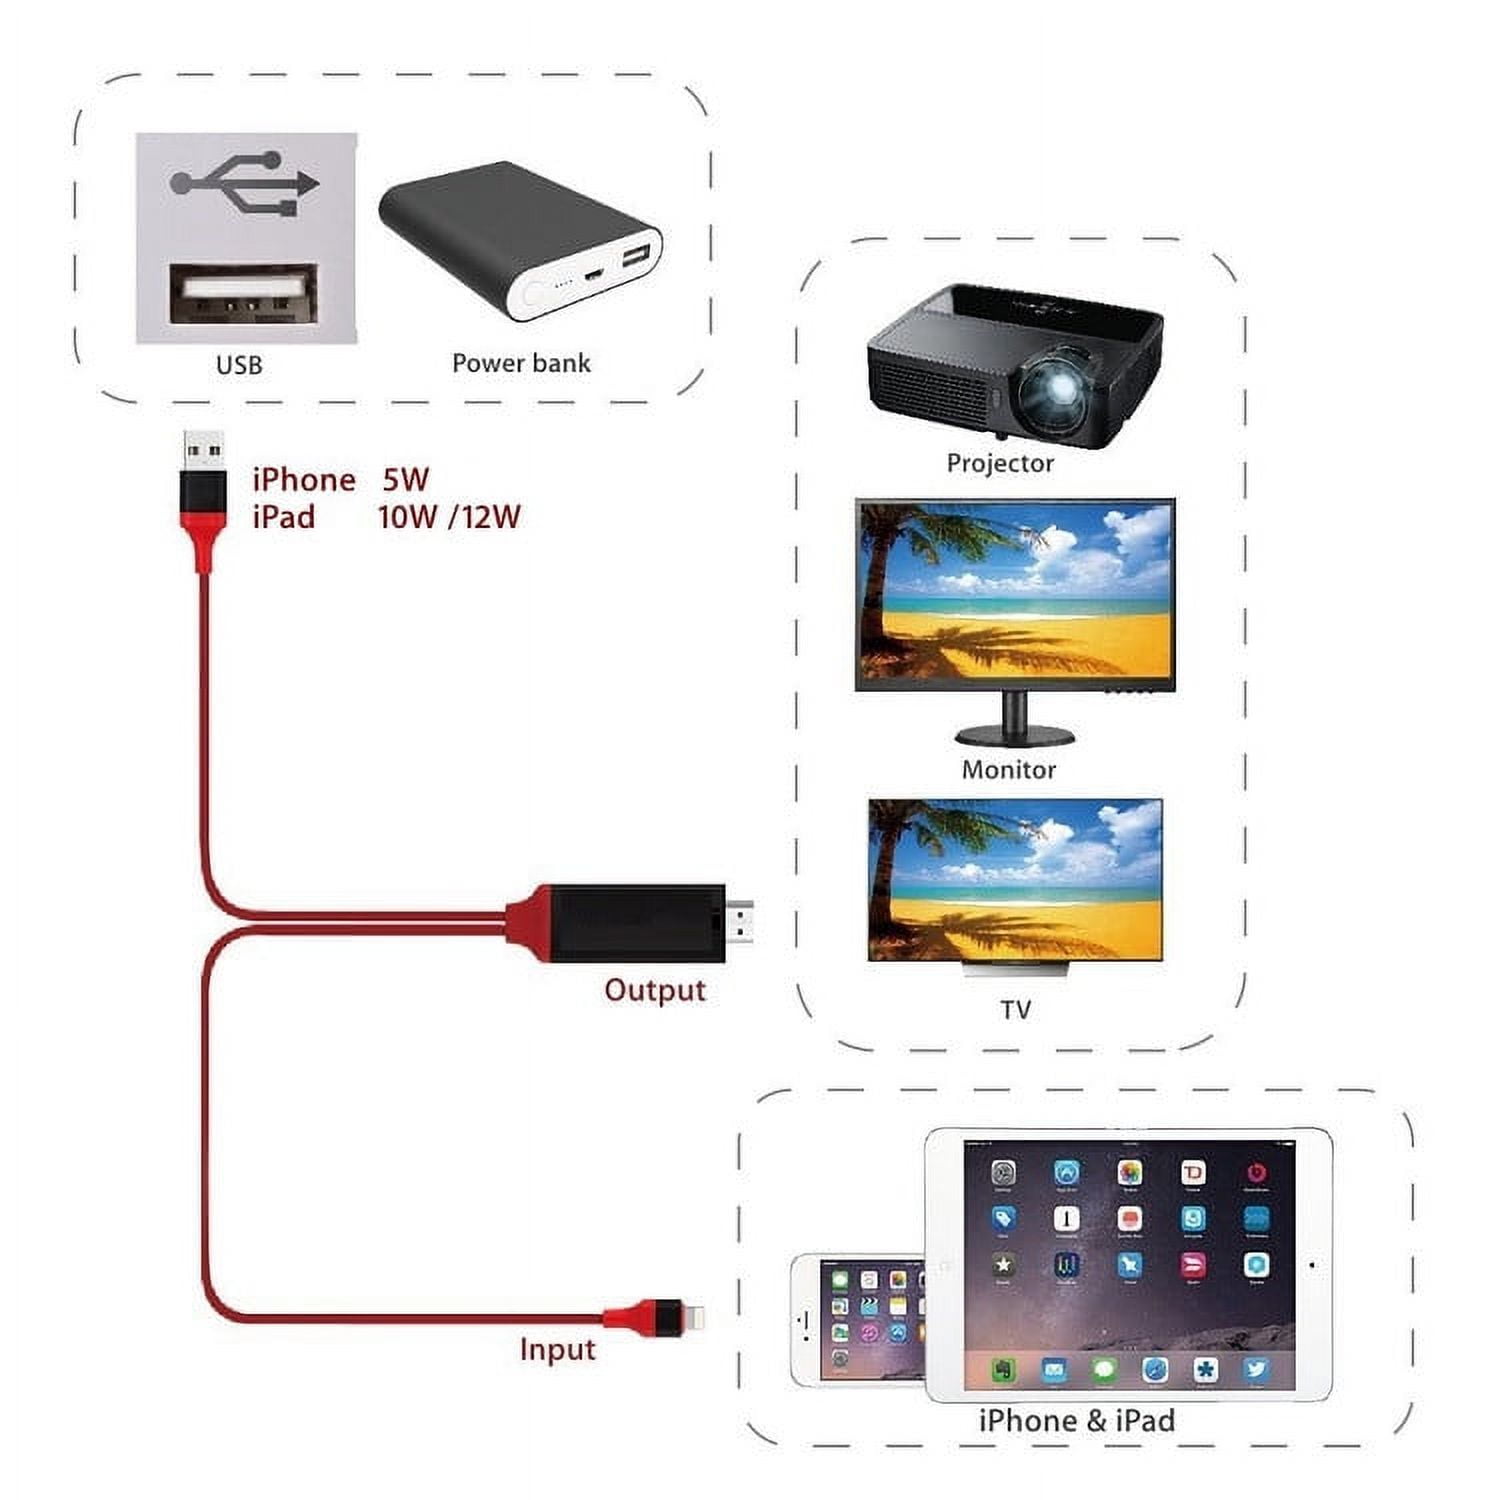 Câble MHL HDMI pour iPhone 5 / 5S / 5C / 6 / 6S / 6 Plus - Argent